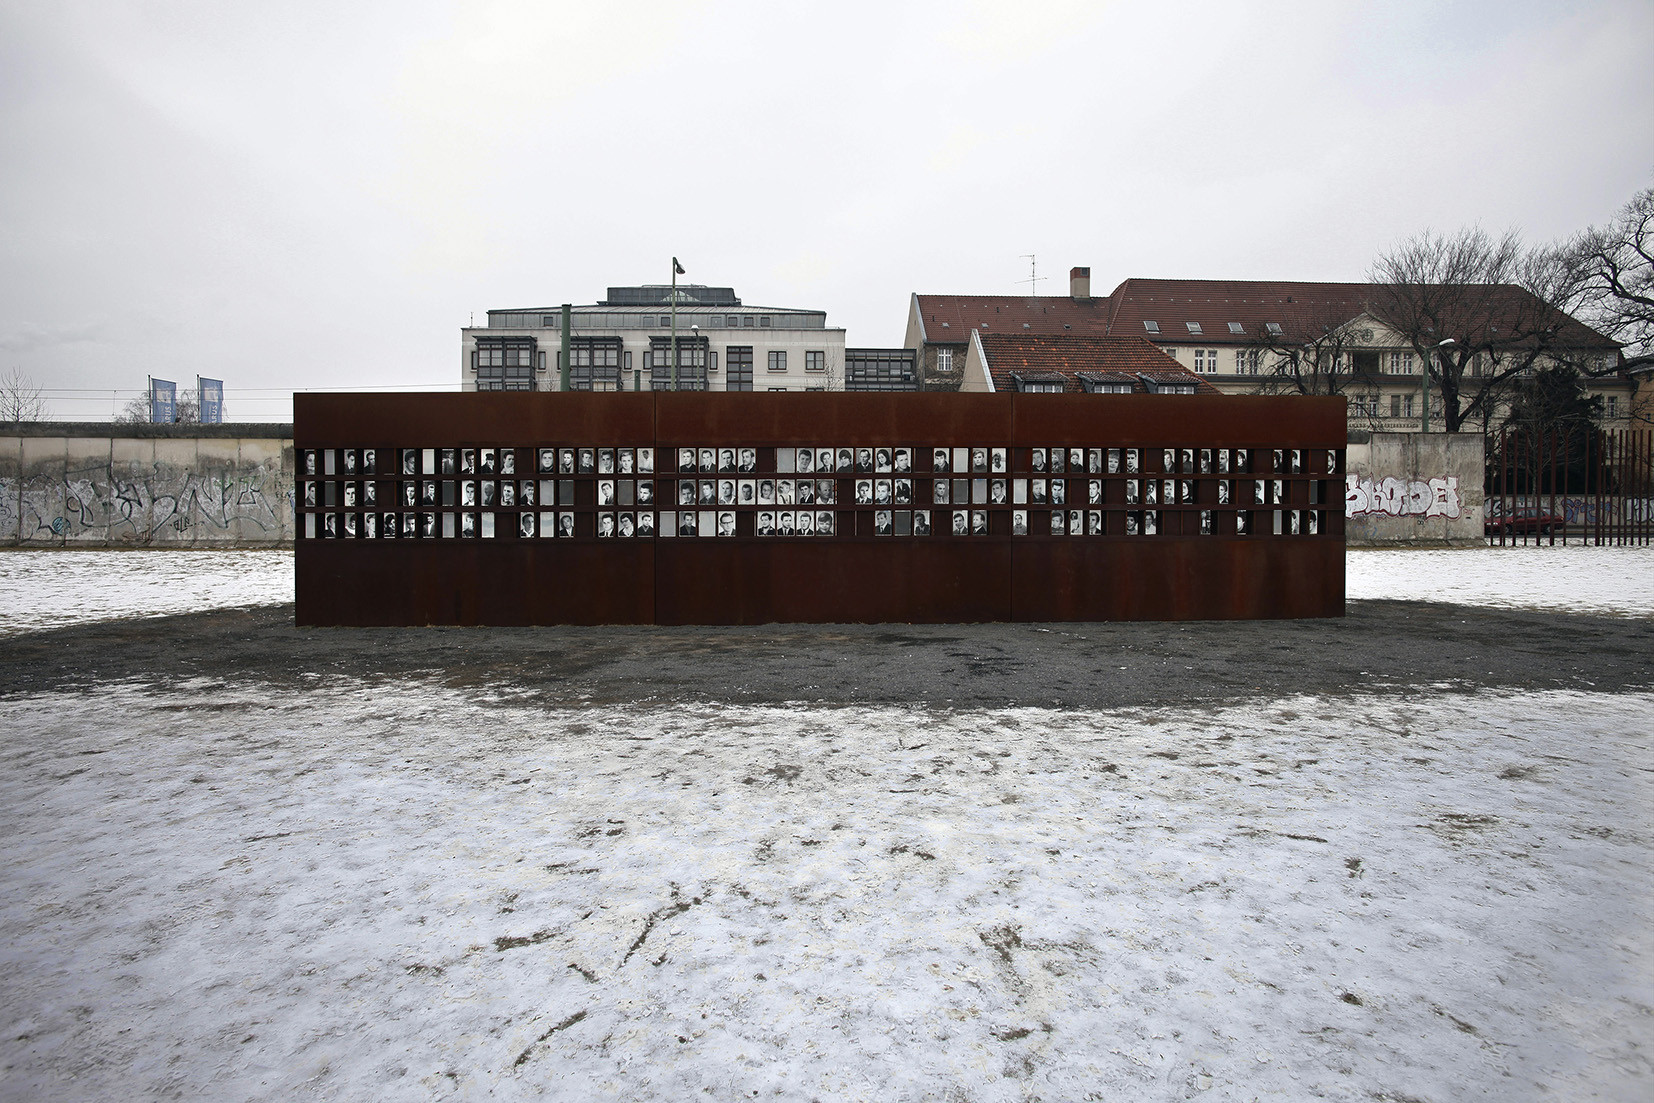 Μια έκθεση για το Τείχος του Βερολίνου στην Γκαλερί ΕΙΡΜΟΣ